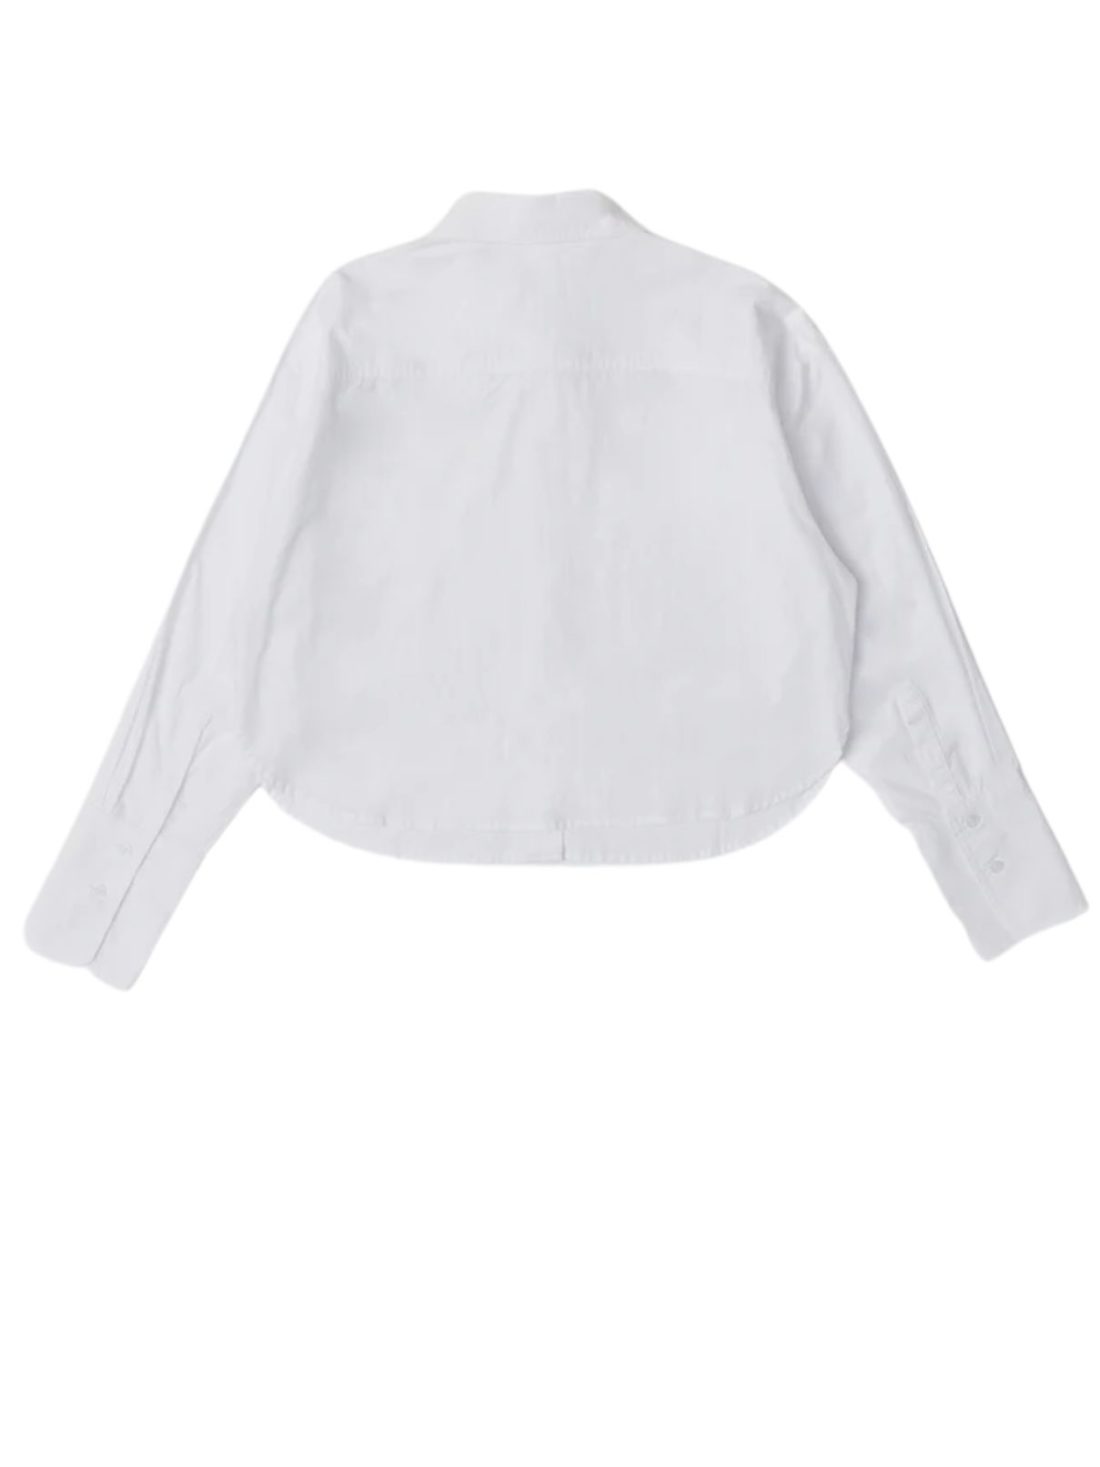 imogen poplin shirt in white